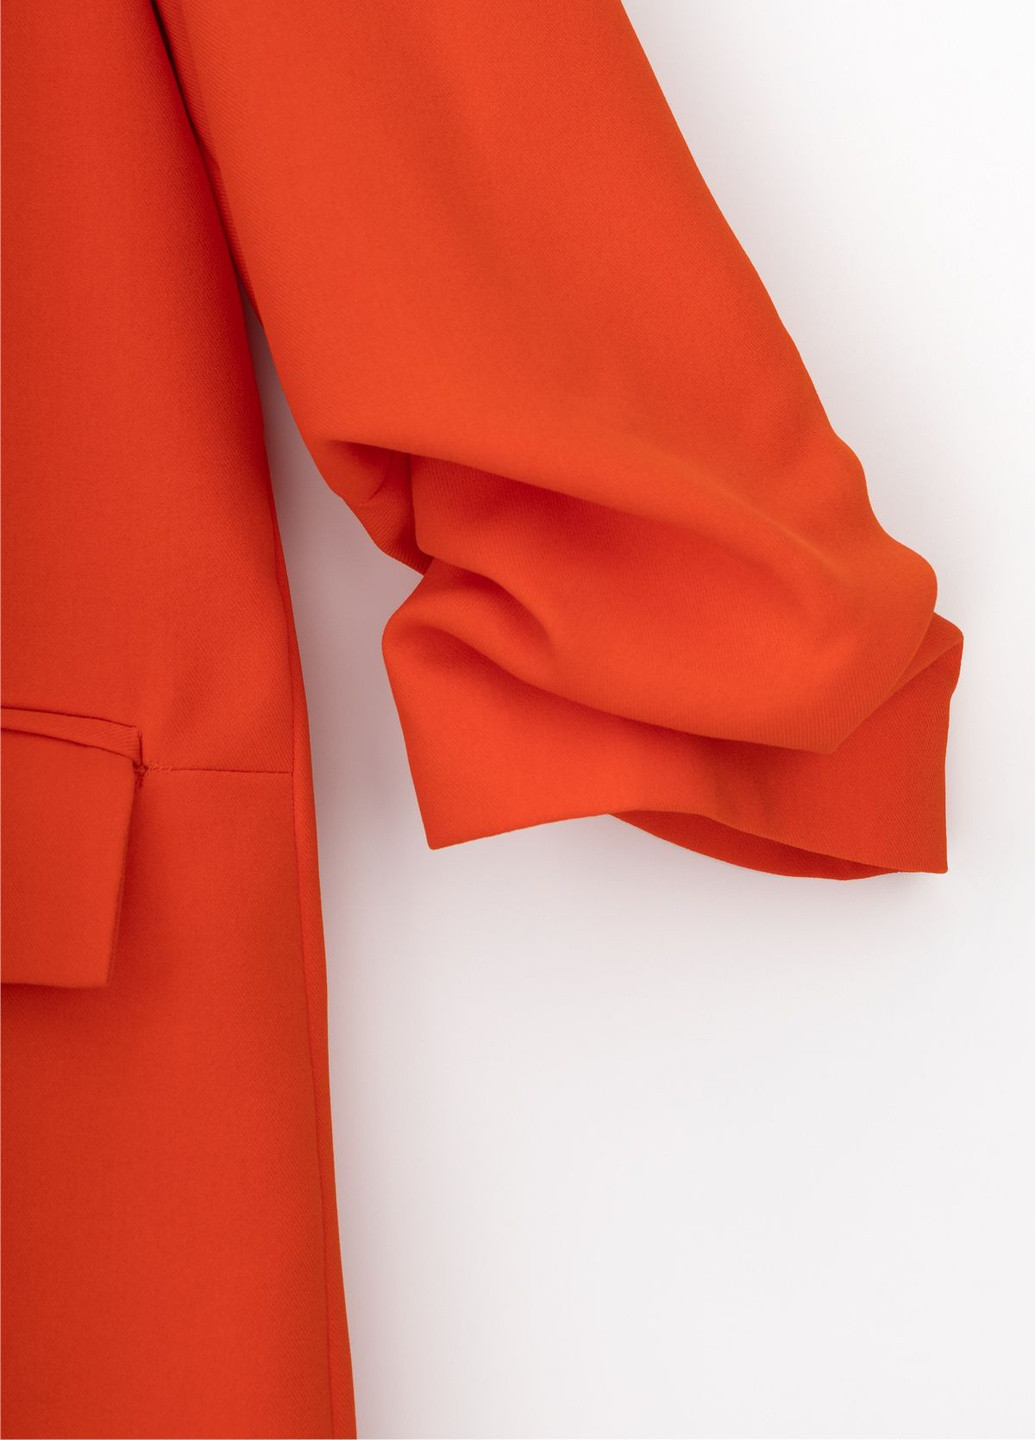 Оранжевый женский пиджак Miss Esta однотонный - демисезонный